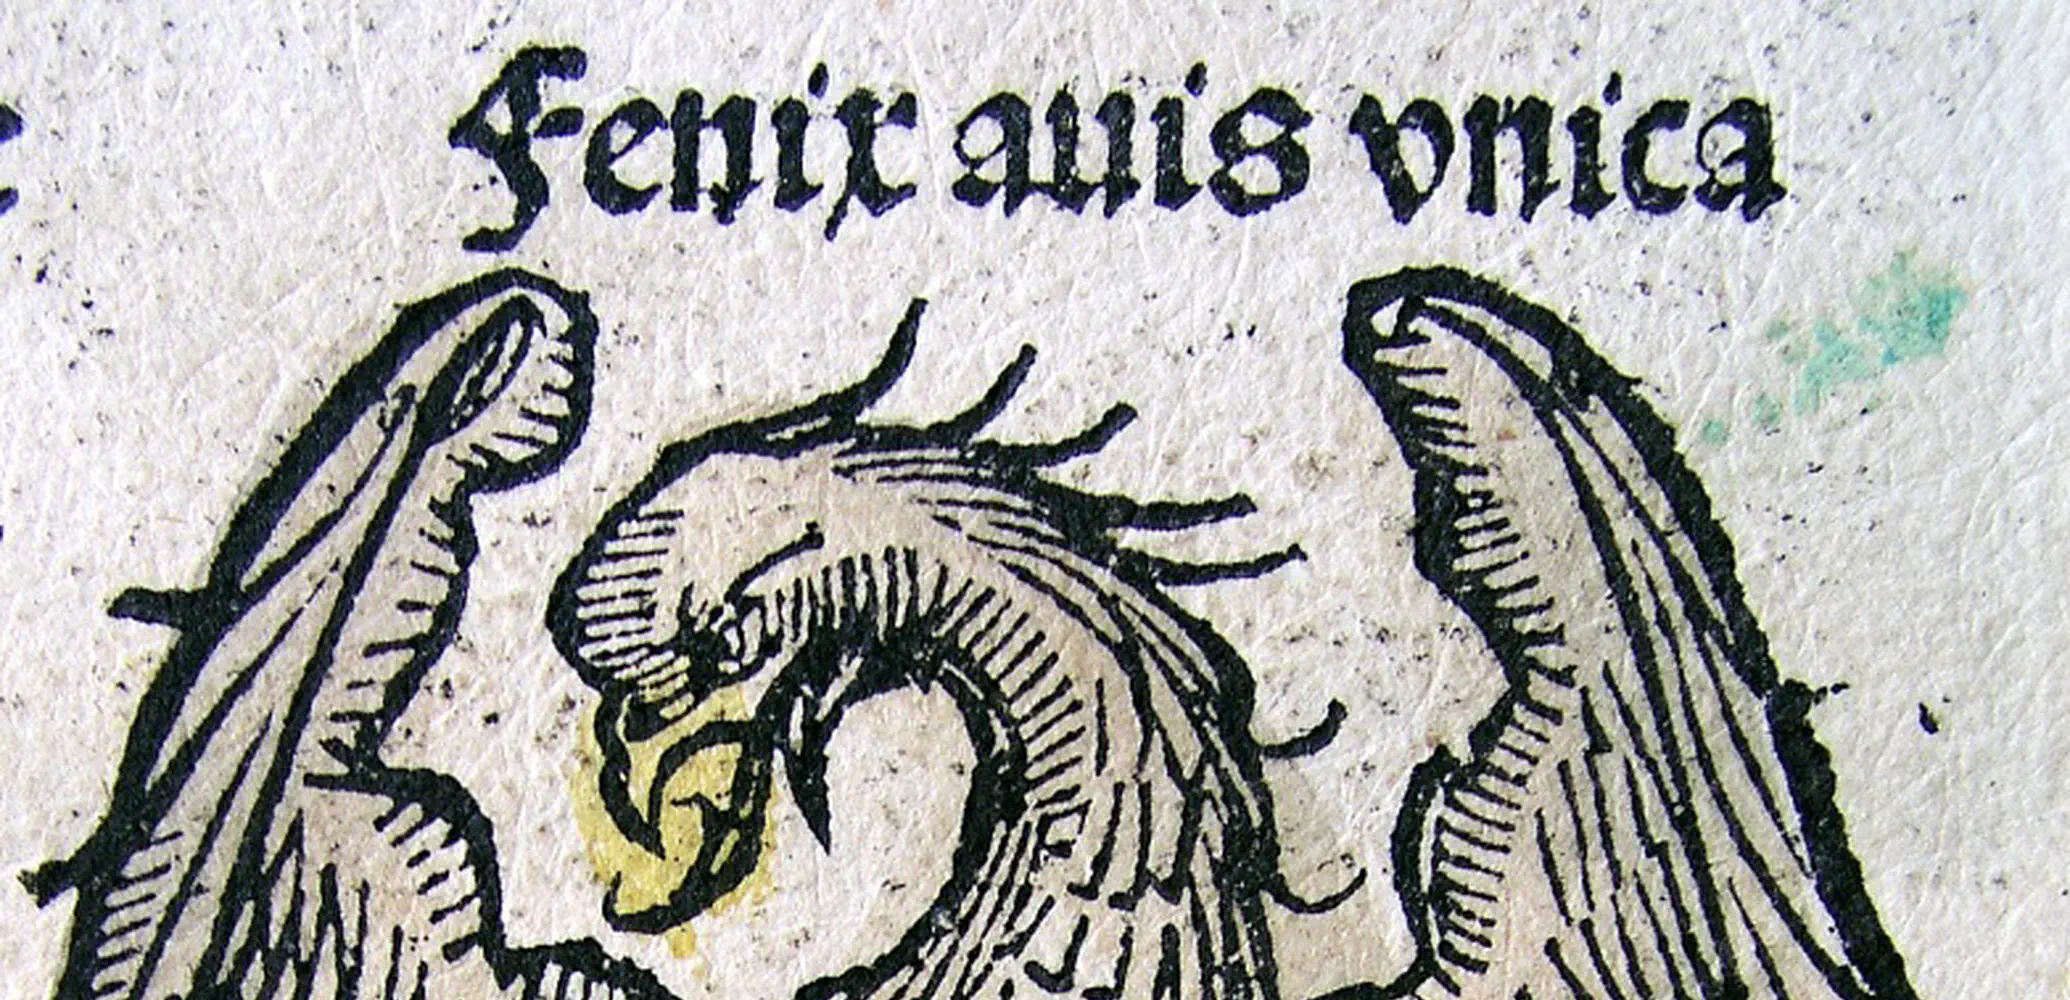 De feniks herrijst uit zijn as, uit de Kroniek van Neurenberg, 1493.
